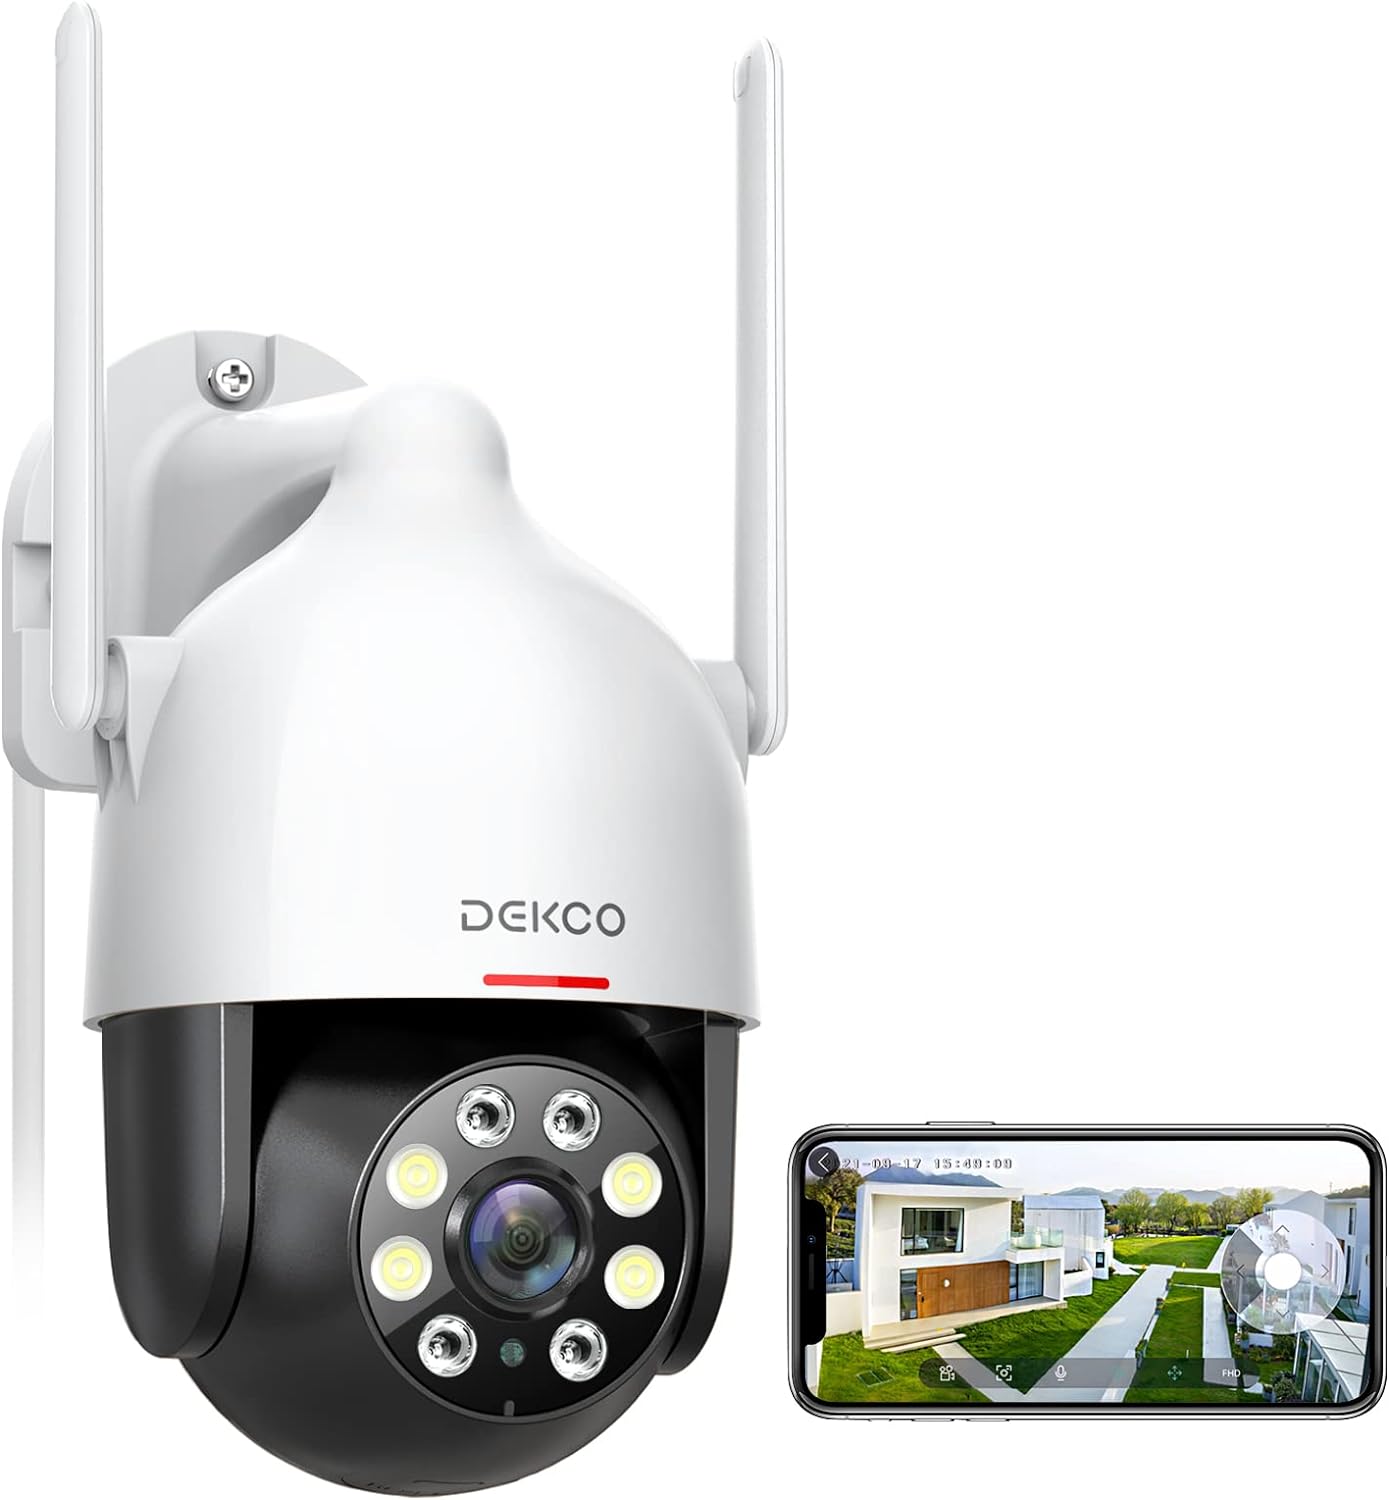 Camara Wifi De Seguridad Inalambrica IP Vigilancia Exterior Para Casas 2K HD